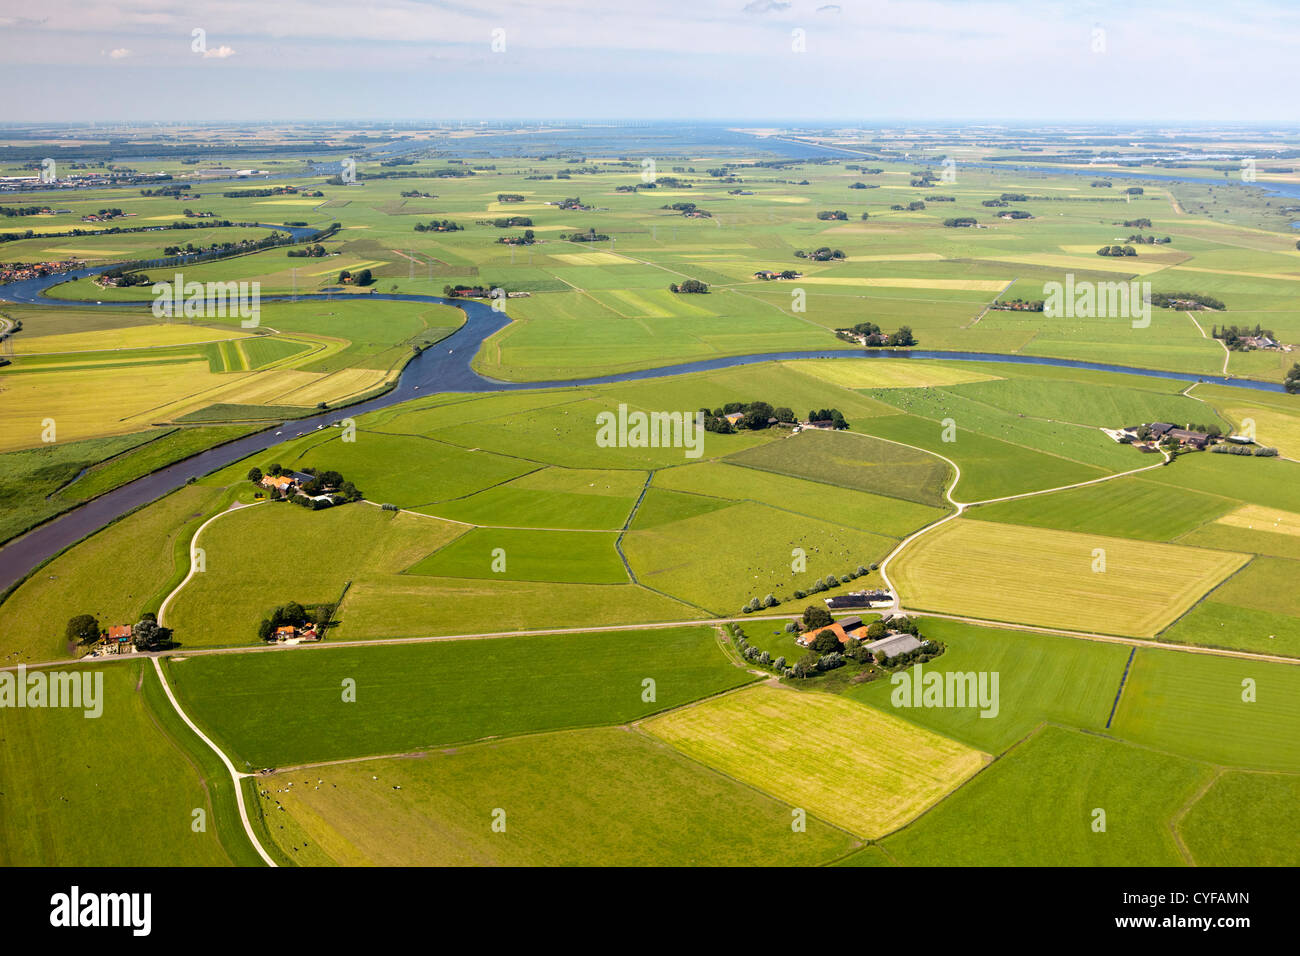 Les Pays-Bas, Skopje, de fermes et de terres agricoles. Vue aérienne. Banque D'Images